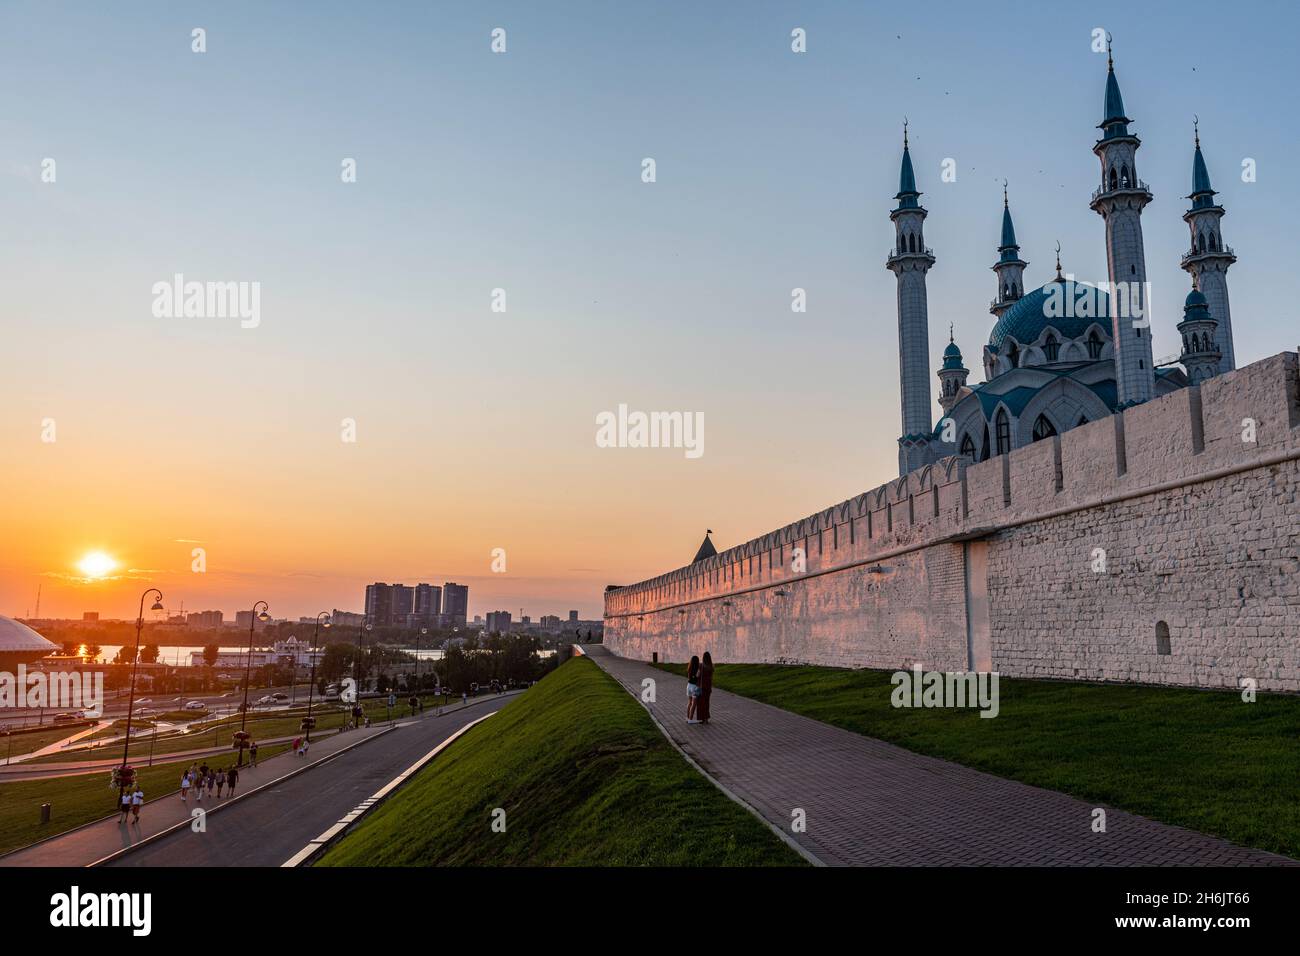 Mosquée Kul Sharif au Kremlin au coucher du soleil, site du patrimoine mondial de l'UNESCO, Kazan, République du Tatarstan, Russie, Europe Banque D'Images